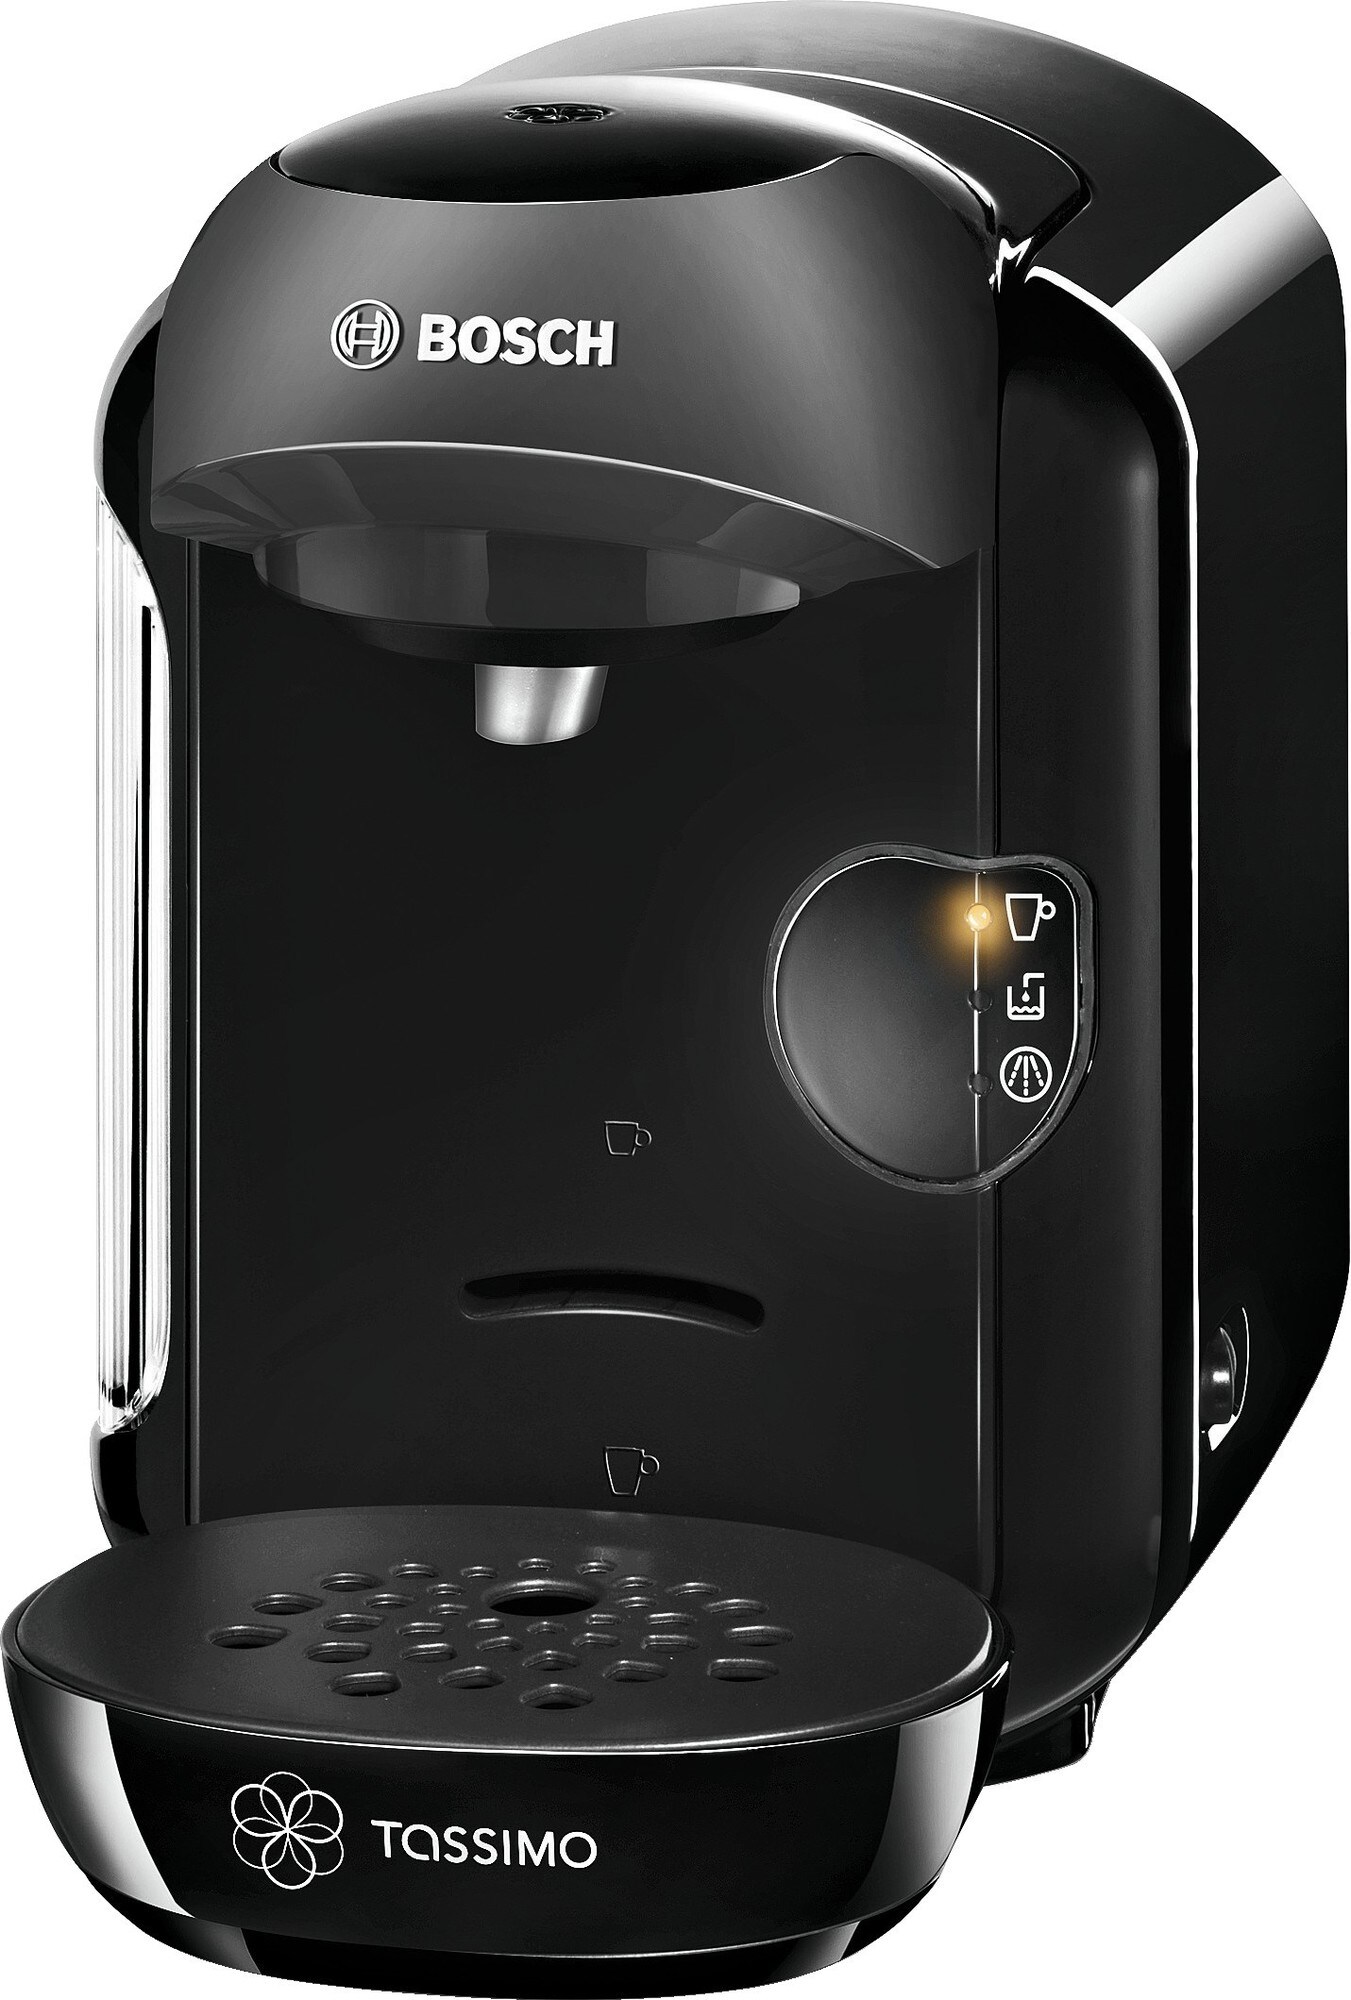 Bosch Tassimo Vivy kapselmaskine TAS1252 - sort - Kaffemaskiner og  kapselmaskiner - Elgiganten